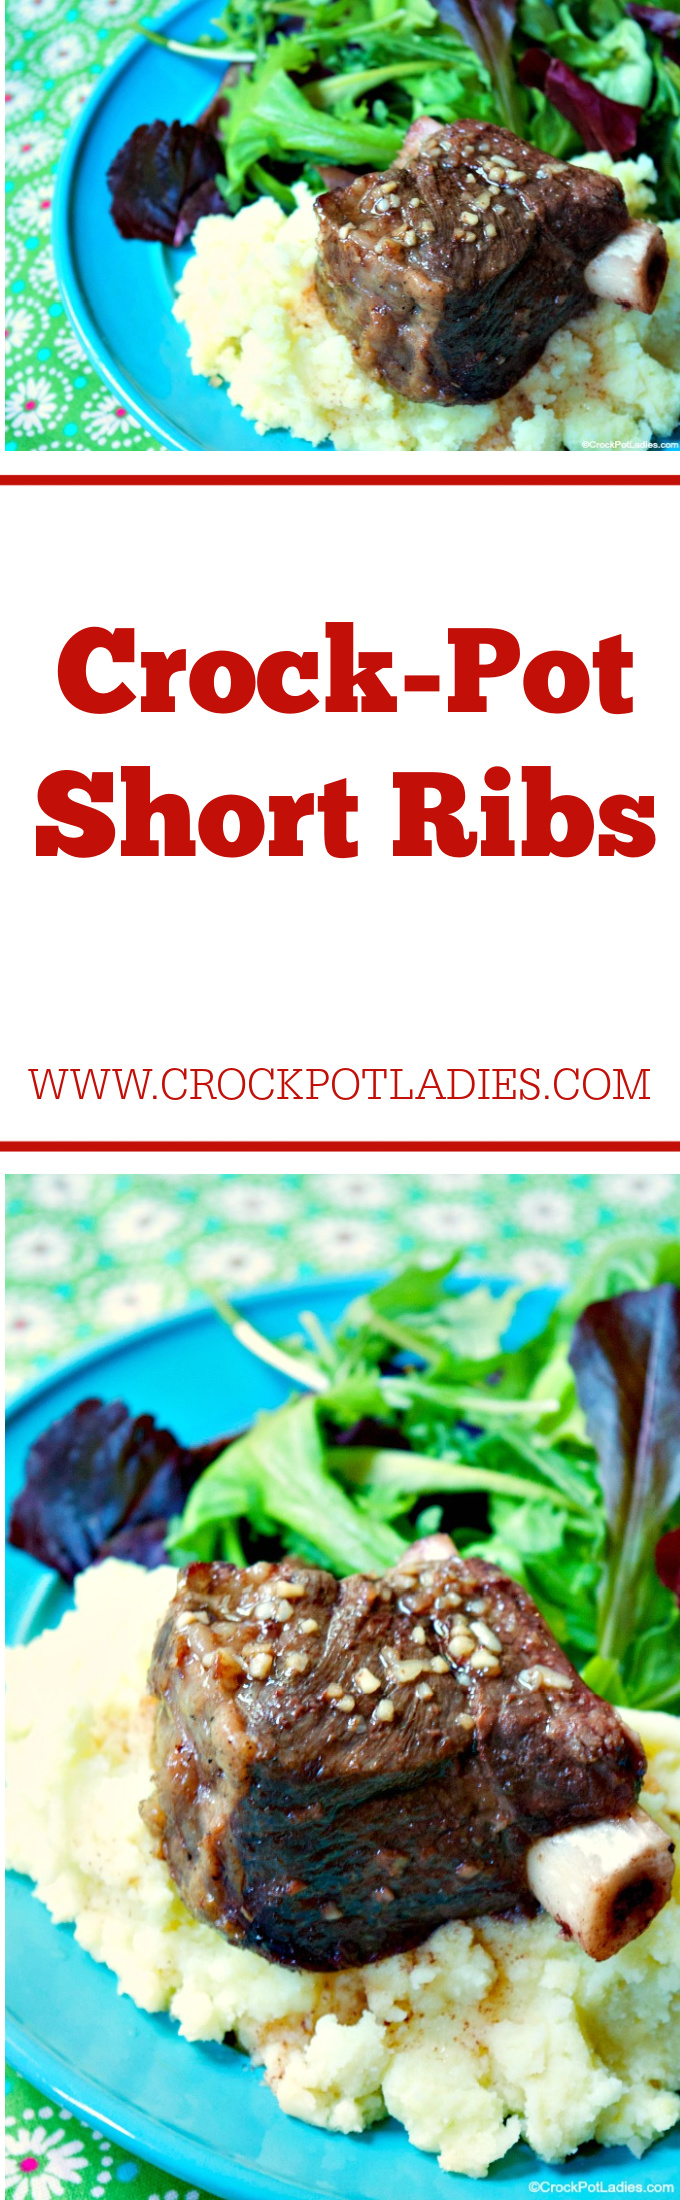 Crock-Pot Short Ribs